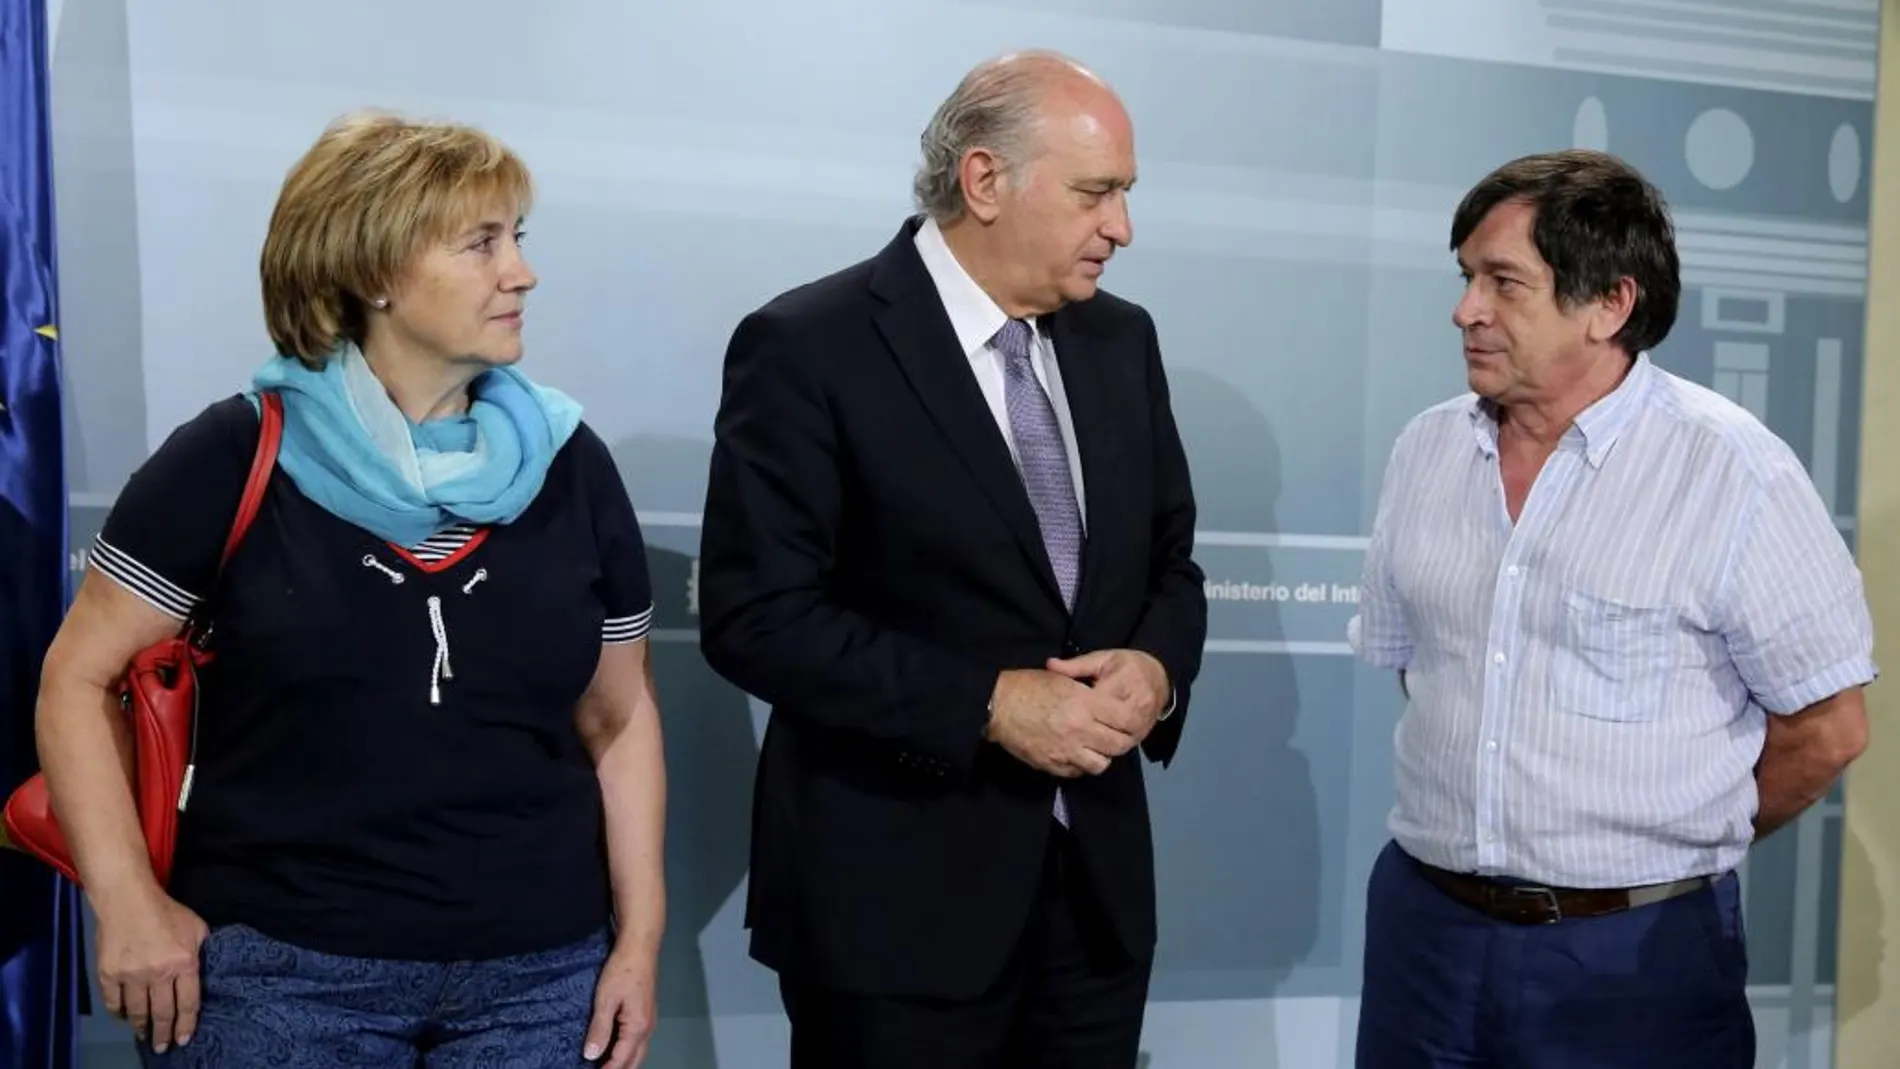 El ministro del Interior Jorge Fernández Díaz con Manuel Blanco y Olga Puig, los padres de la joven Eva Blanco